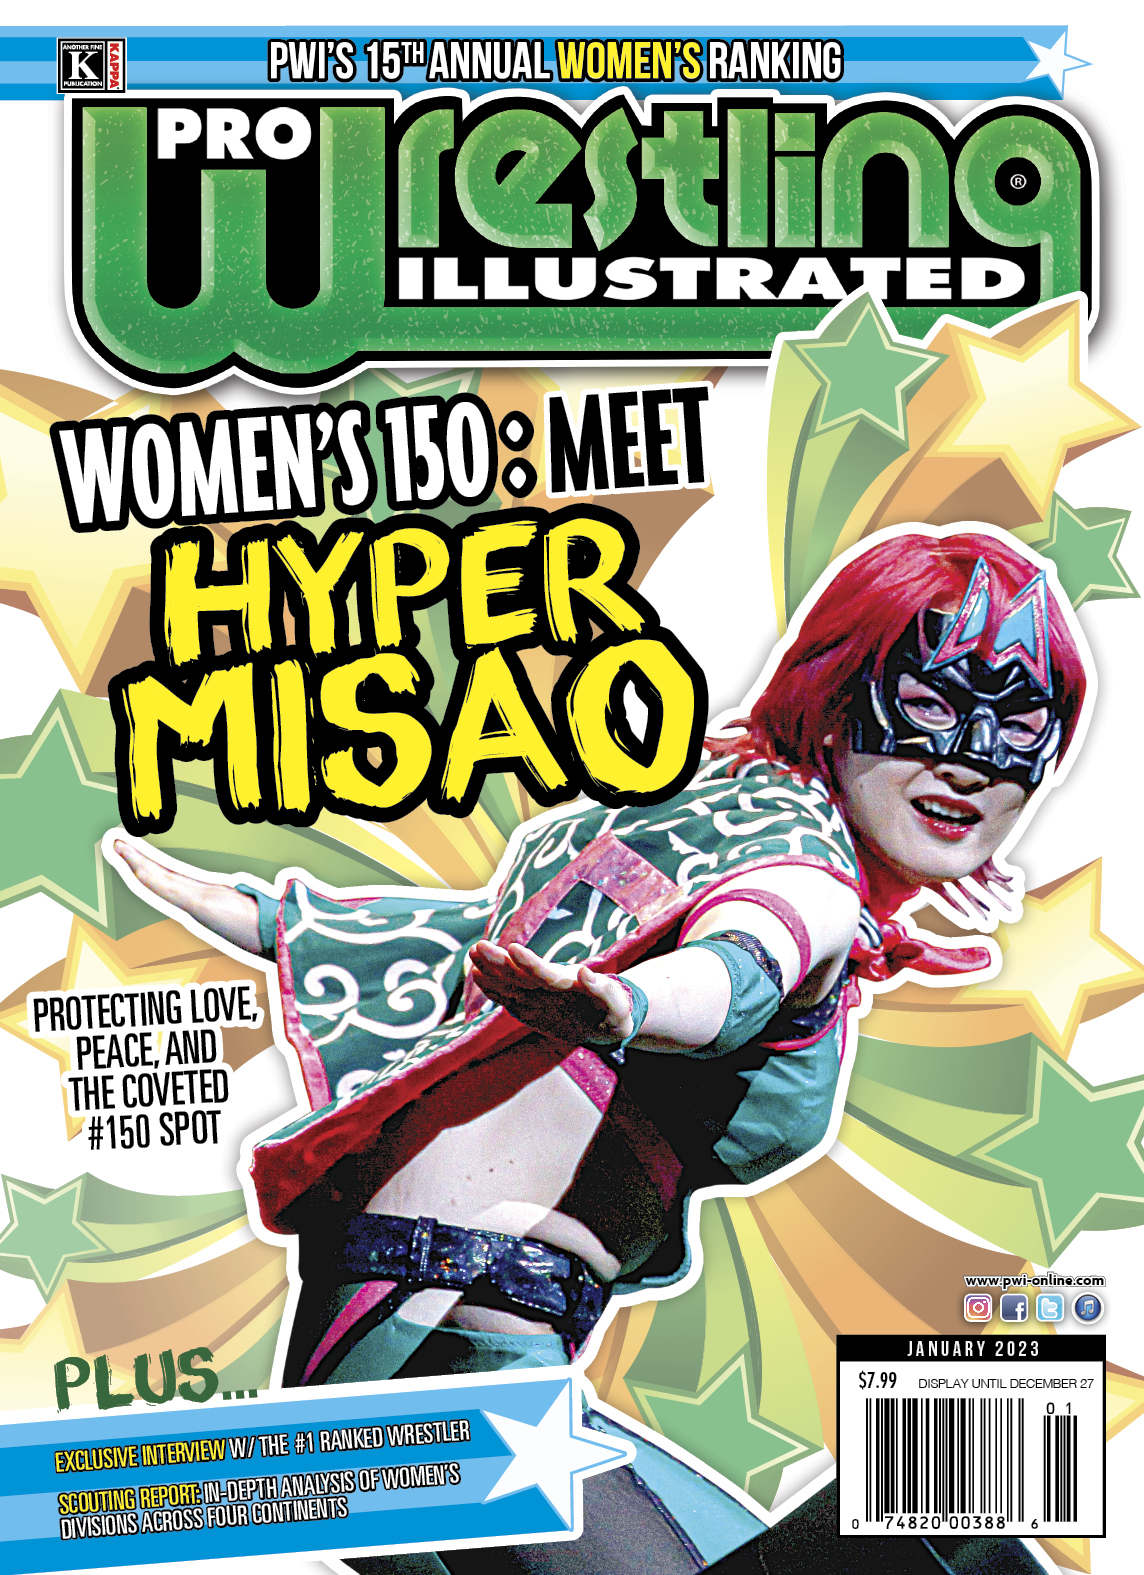 Hyper Misao alternate Women's 150 cover